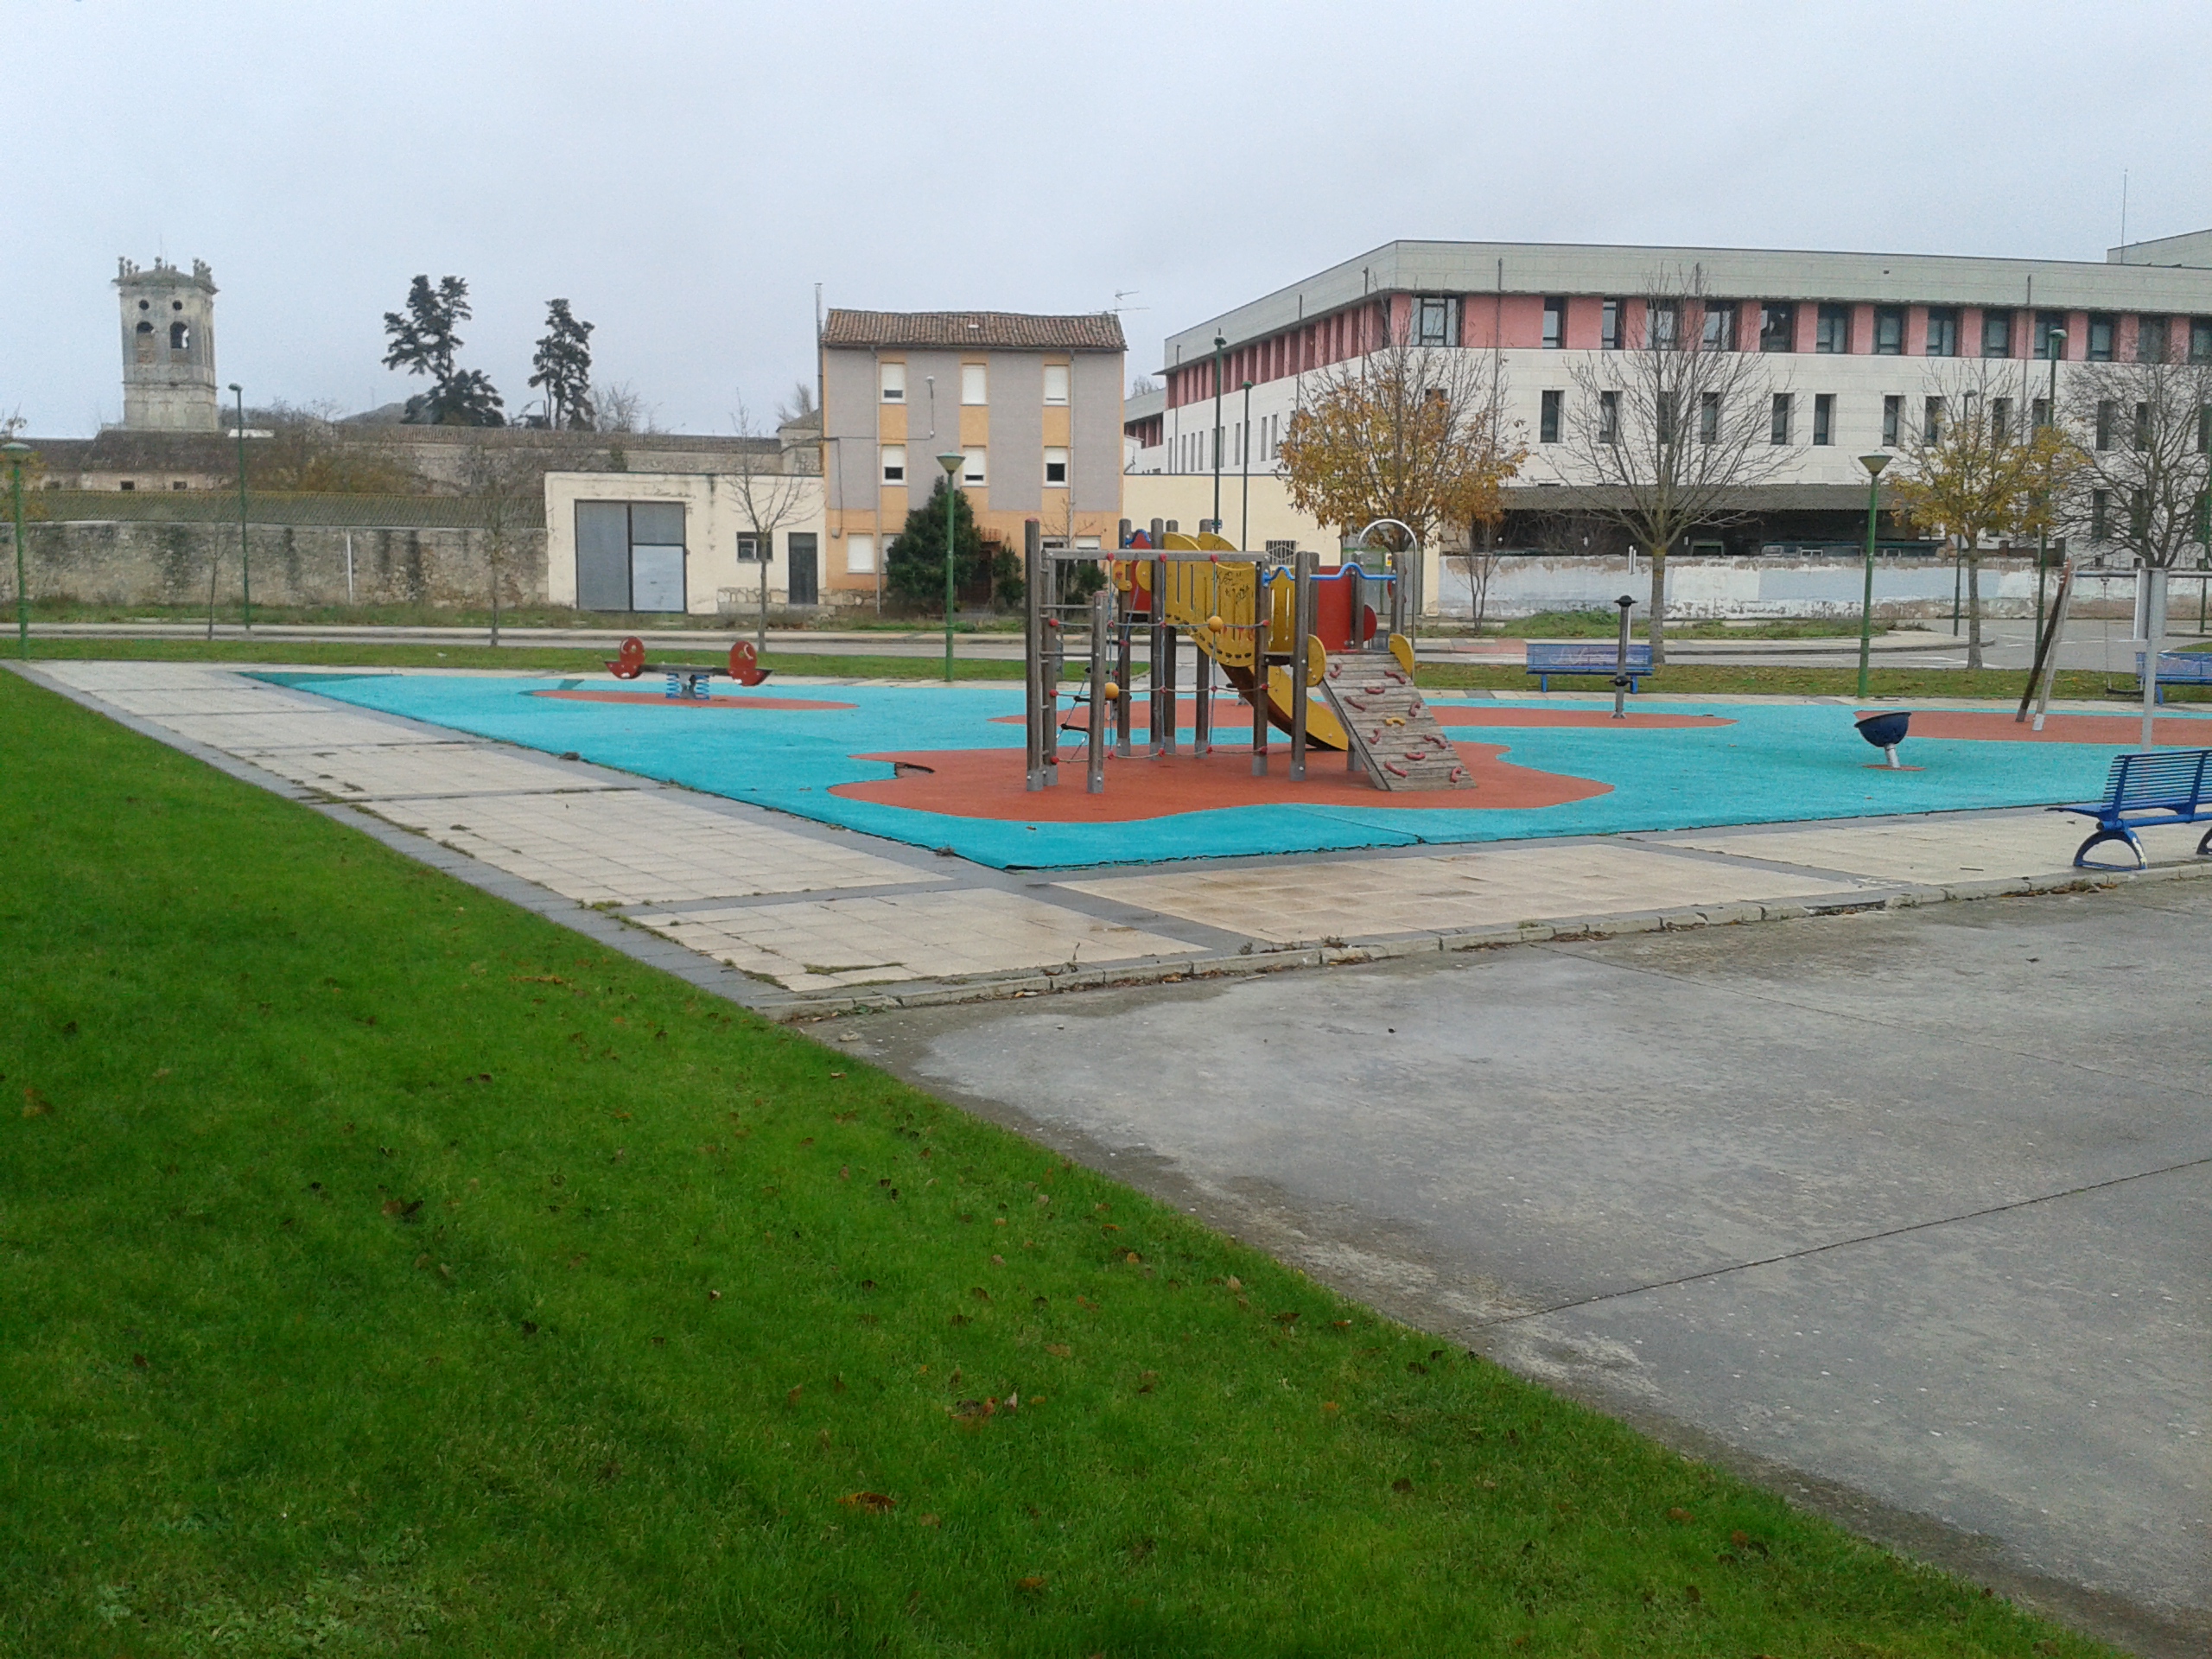 Parque infantil próximo a universidades